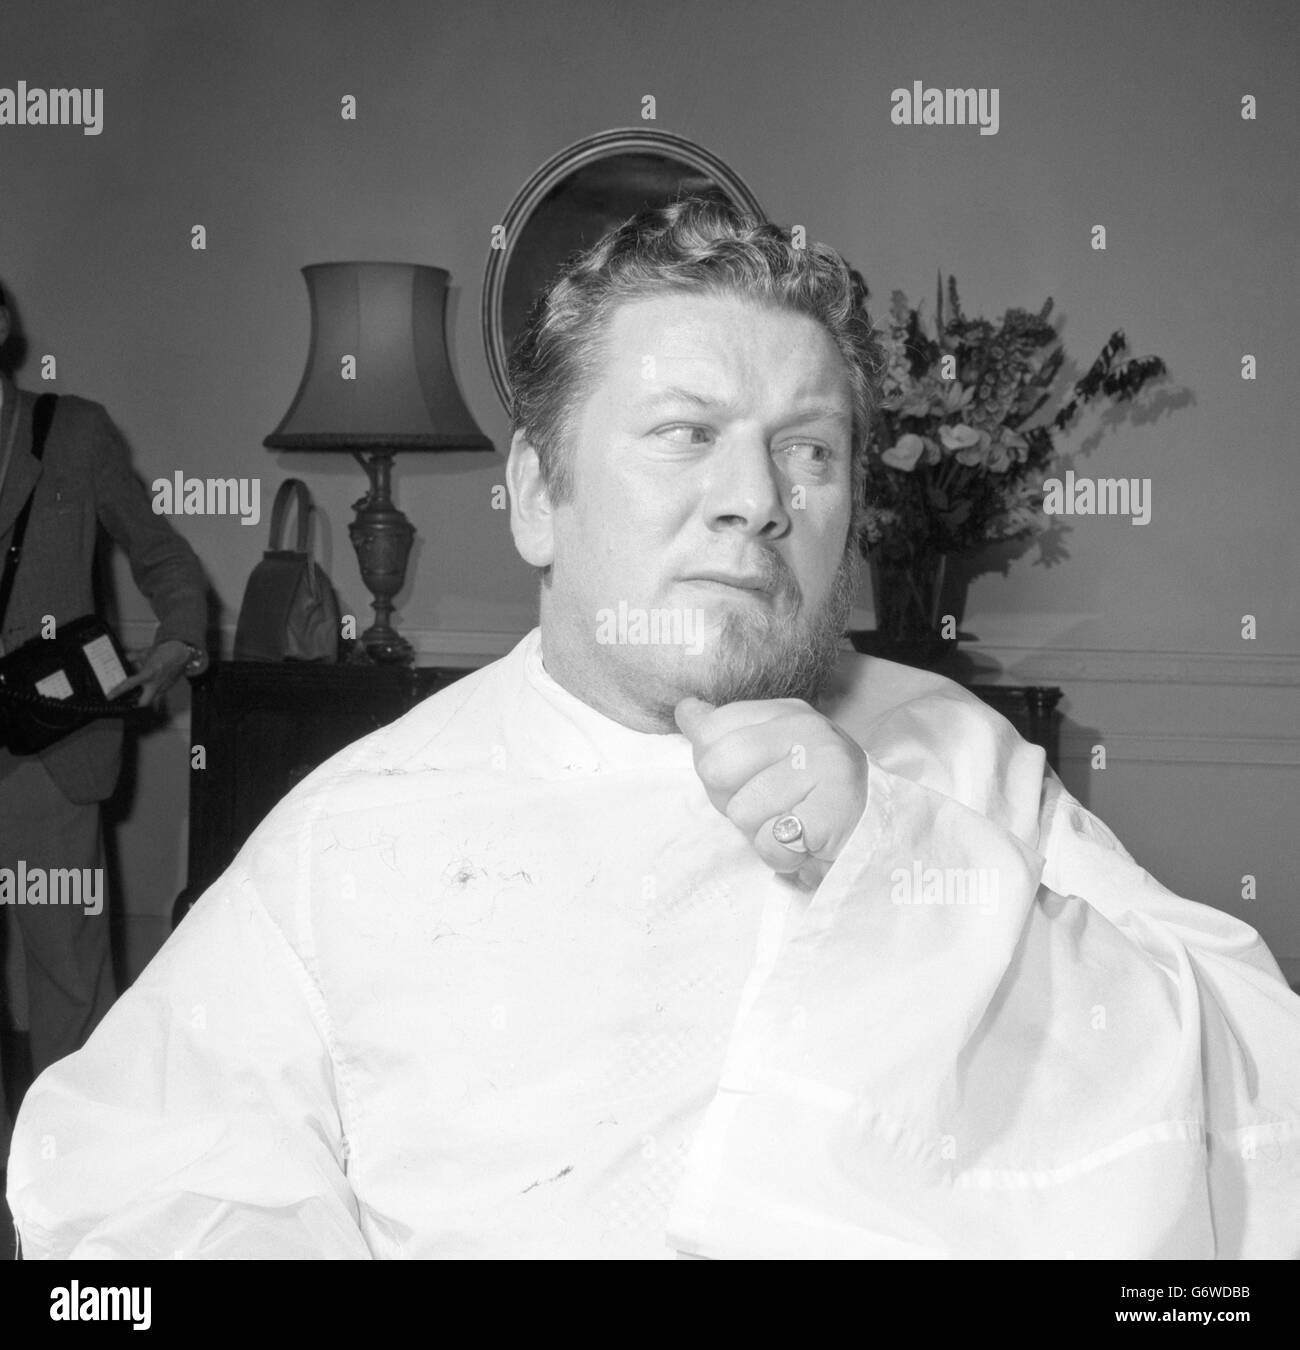 Nach sorgfältiger Kultivierung der letzten zehn Jahre wird der Bart von Peter Ustinov für seine neue, saubere, rasierte Rolle des Hauptmanns Vere im Film Billy Budd schnell und schmerzlos entfernt. Stockfoto